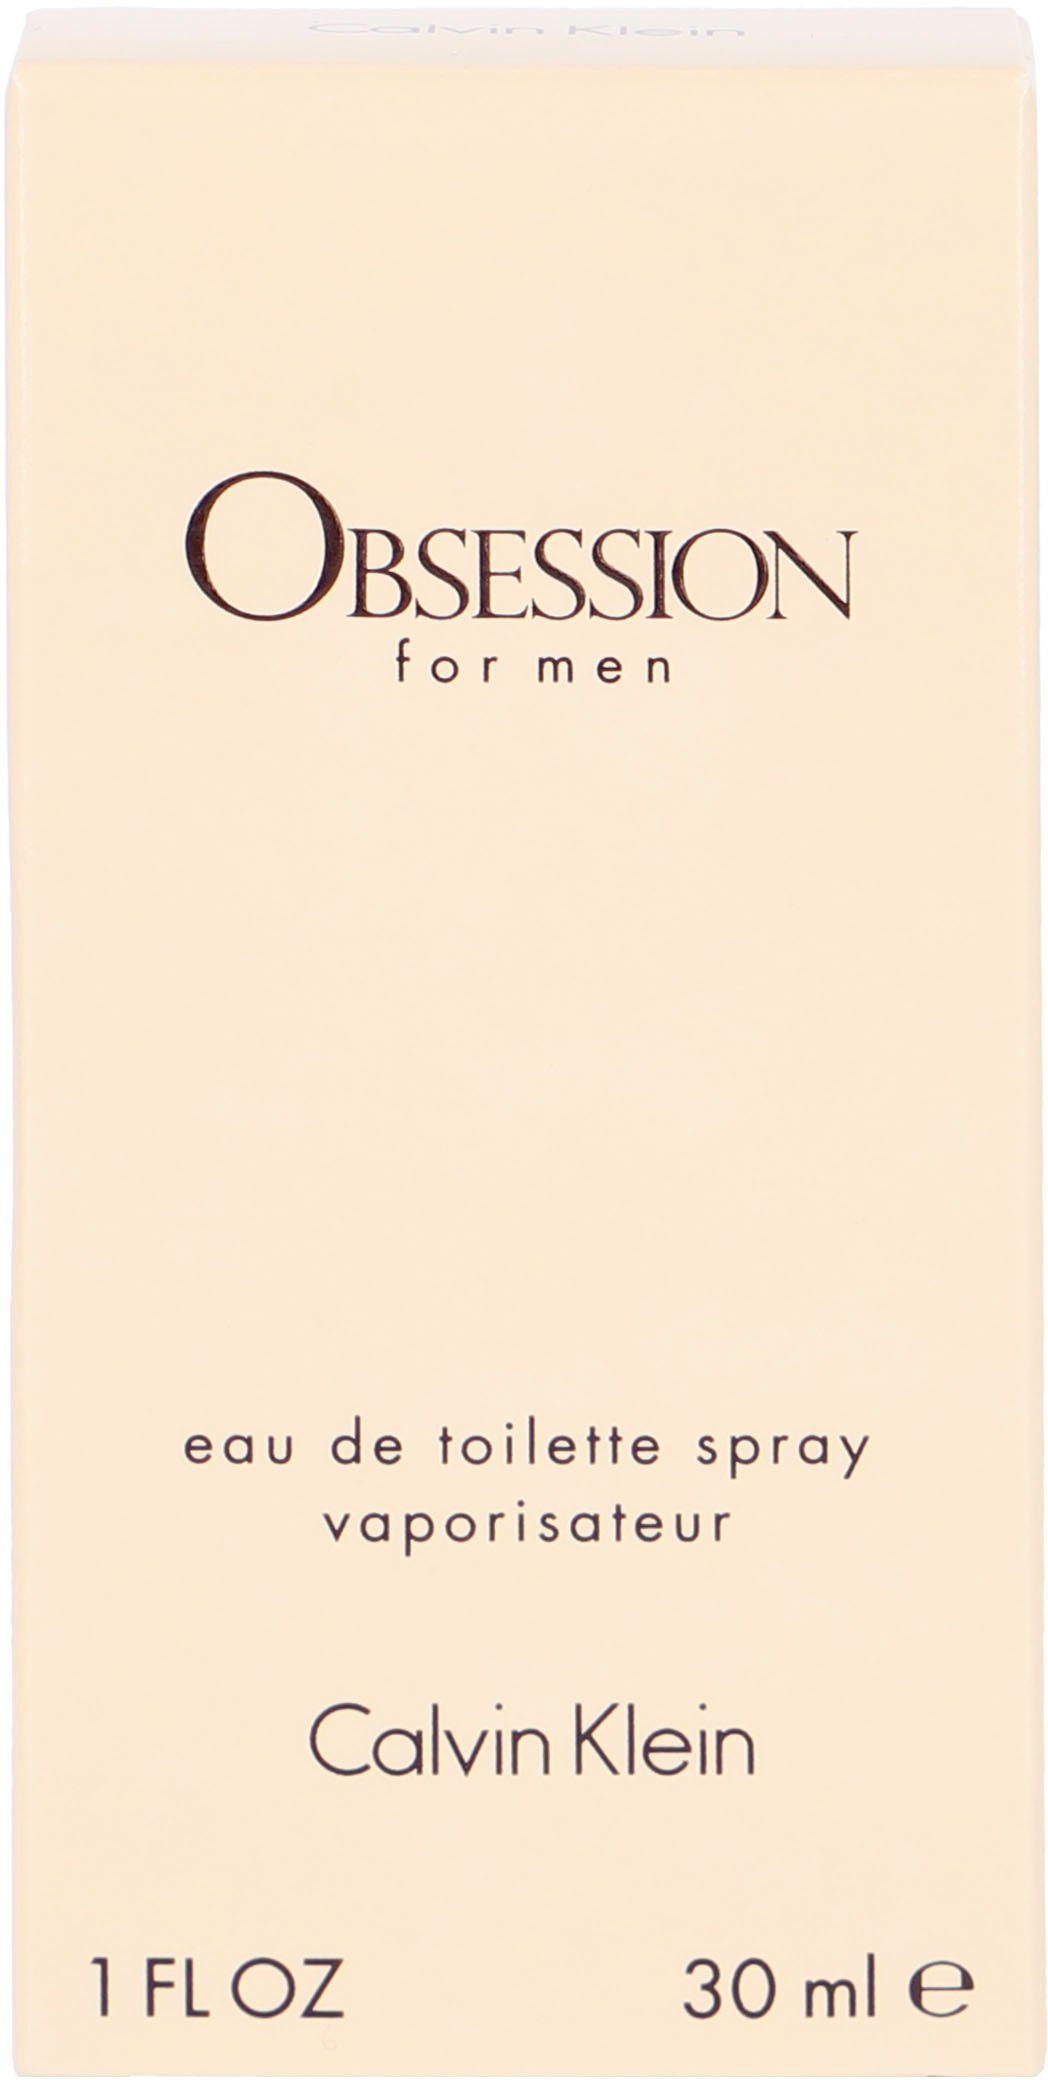 EdT, Men, Toilette Calvin Parfum, Klein de Duftklassiker For Obsession Eau Männerduft,